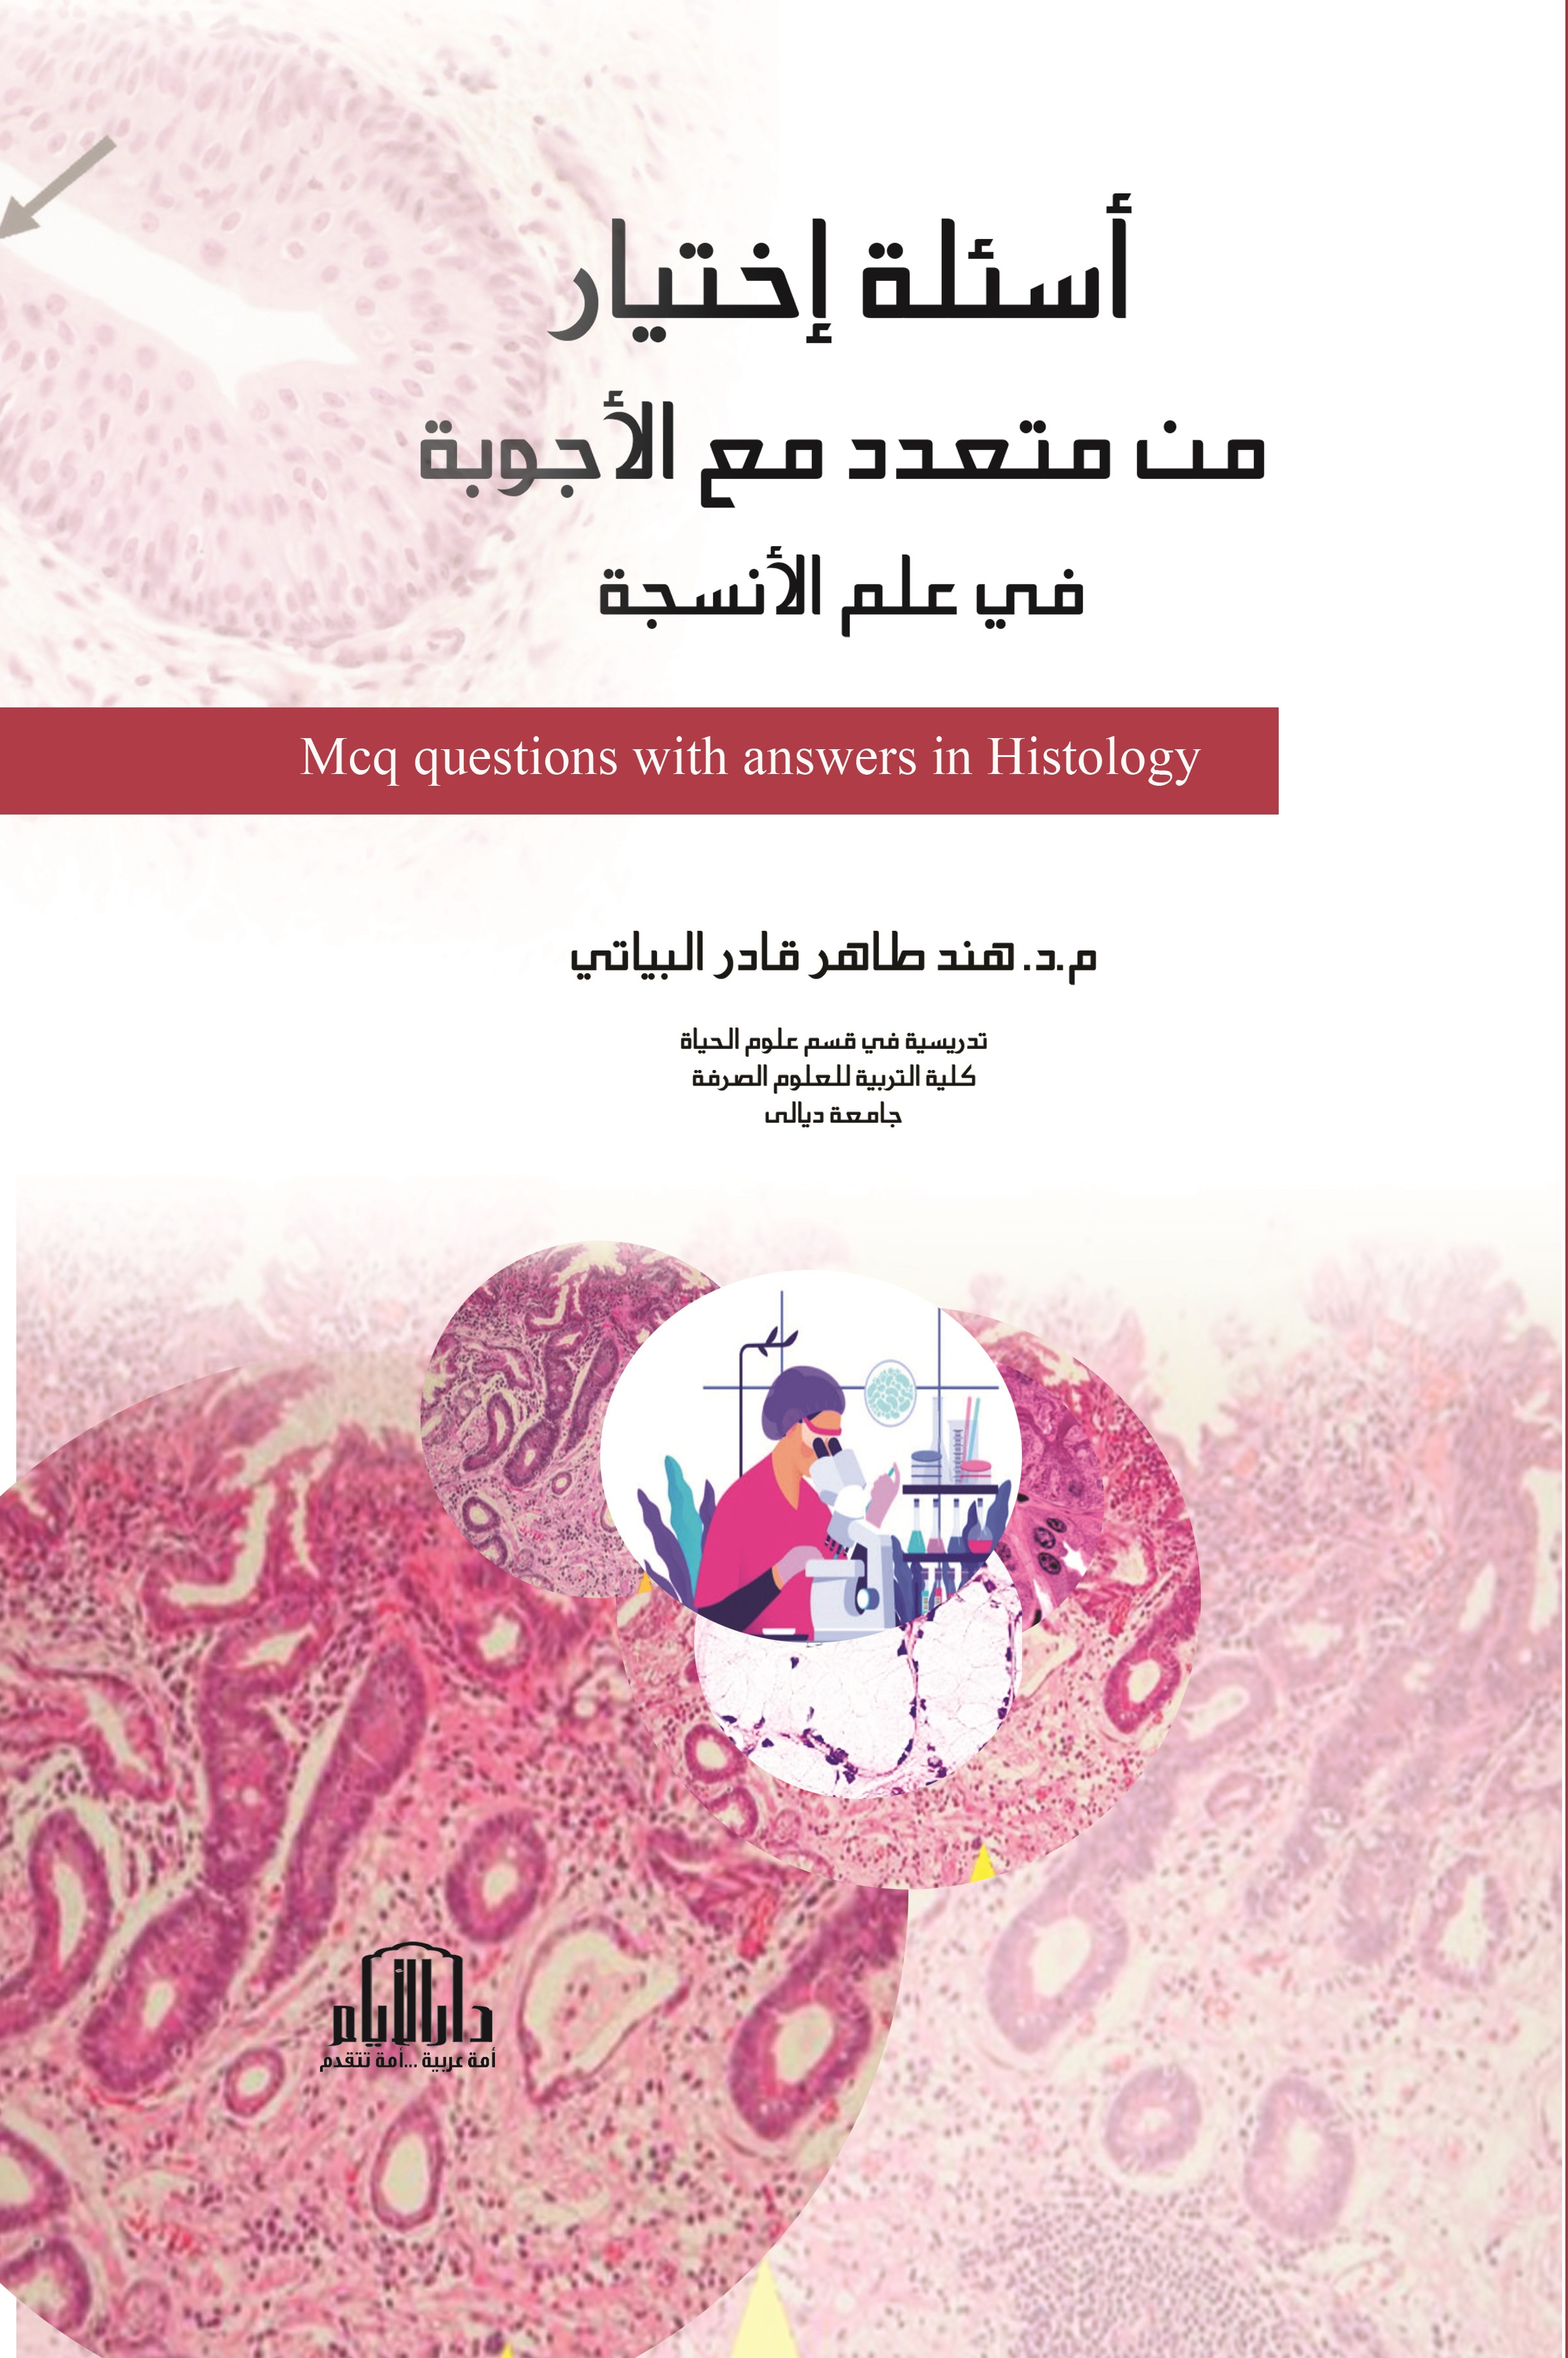 أسئلة إختيار من متعدد مع الأجوبة في علم الأنسجة - Mcq questions with answers in Histology